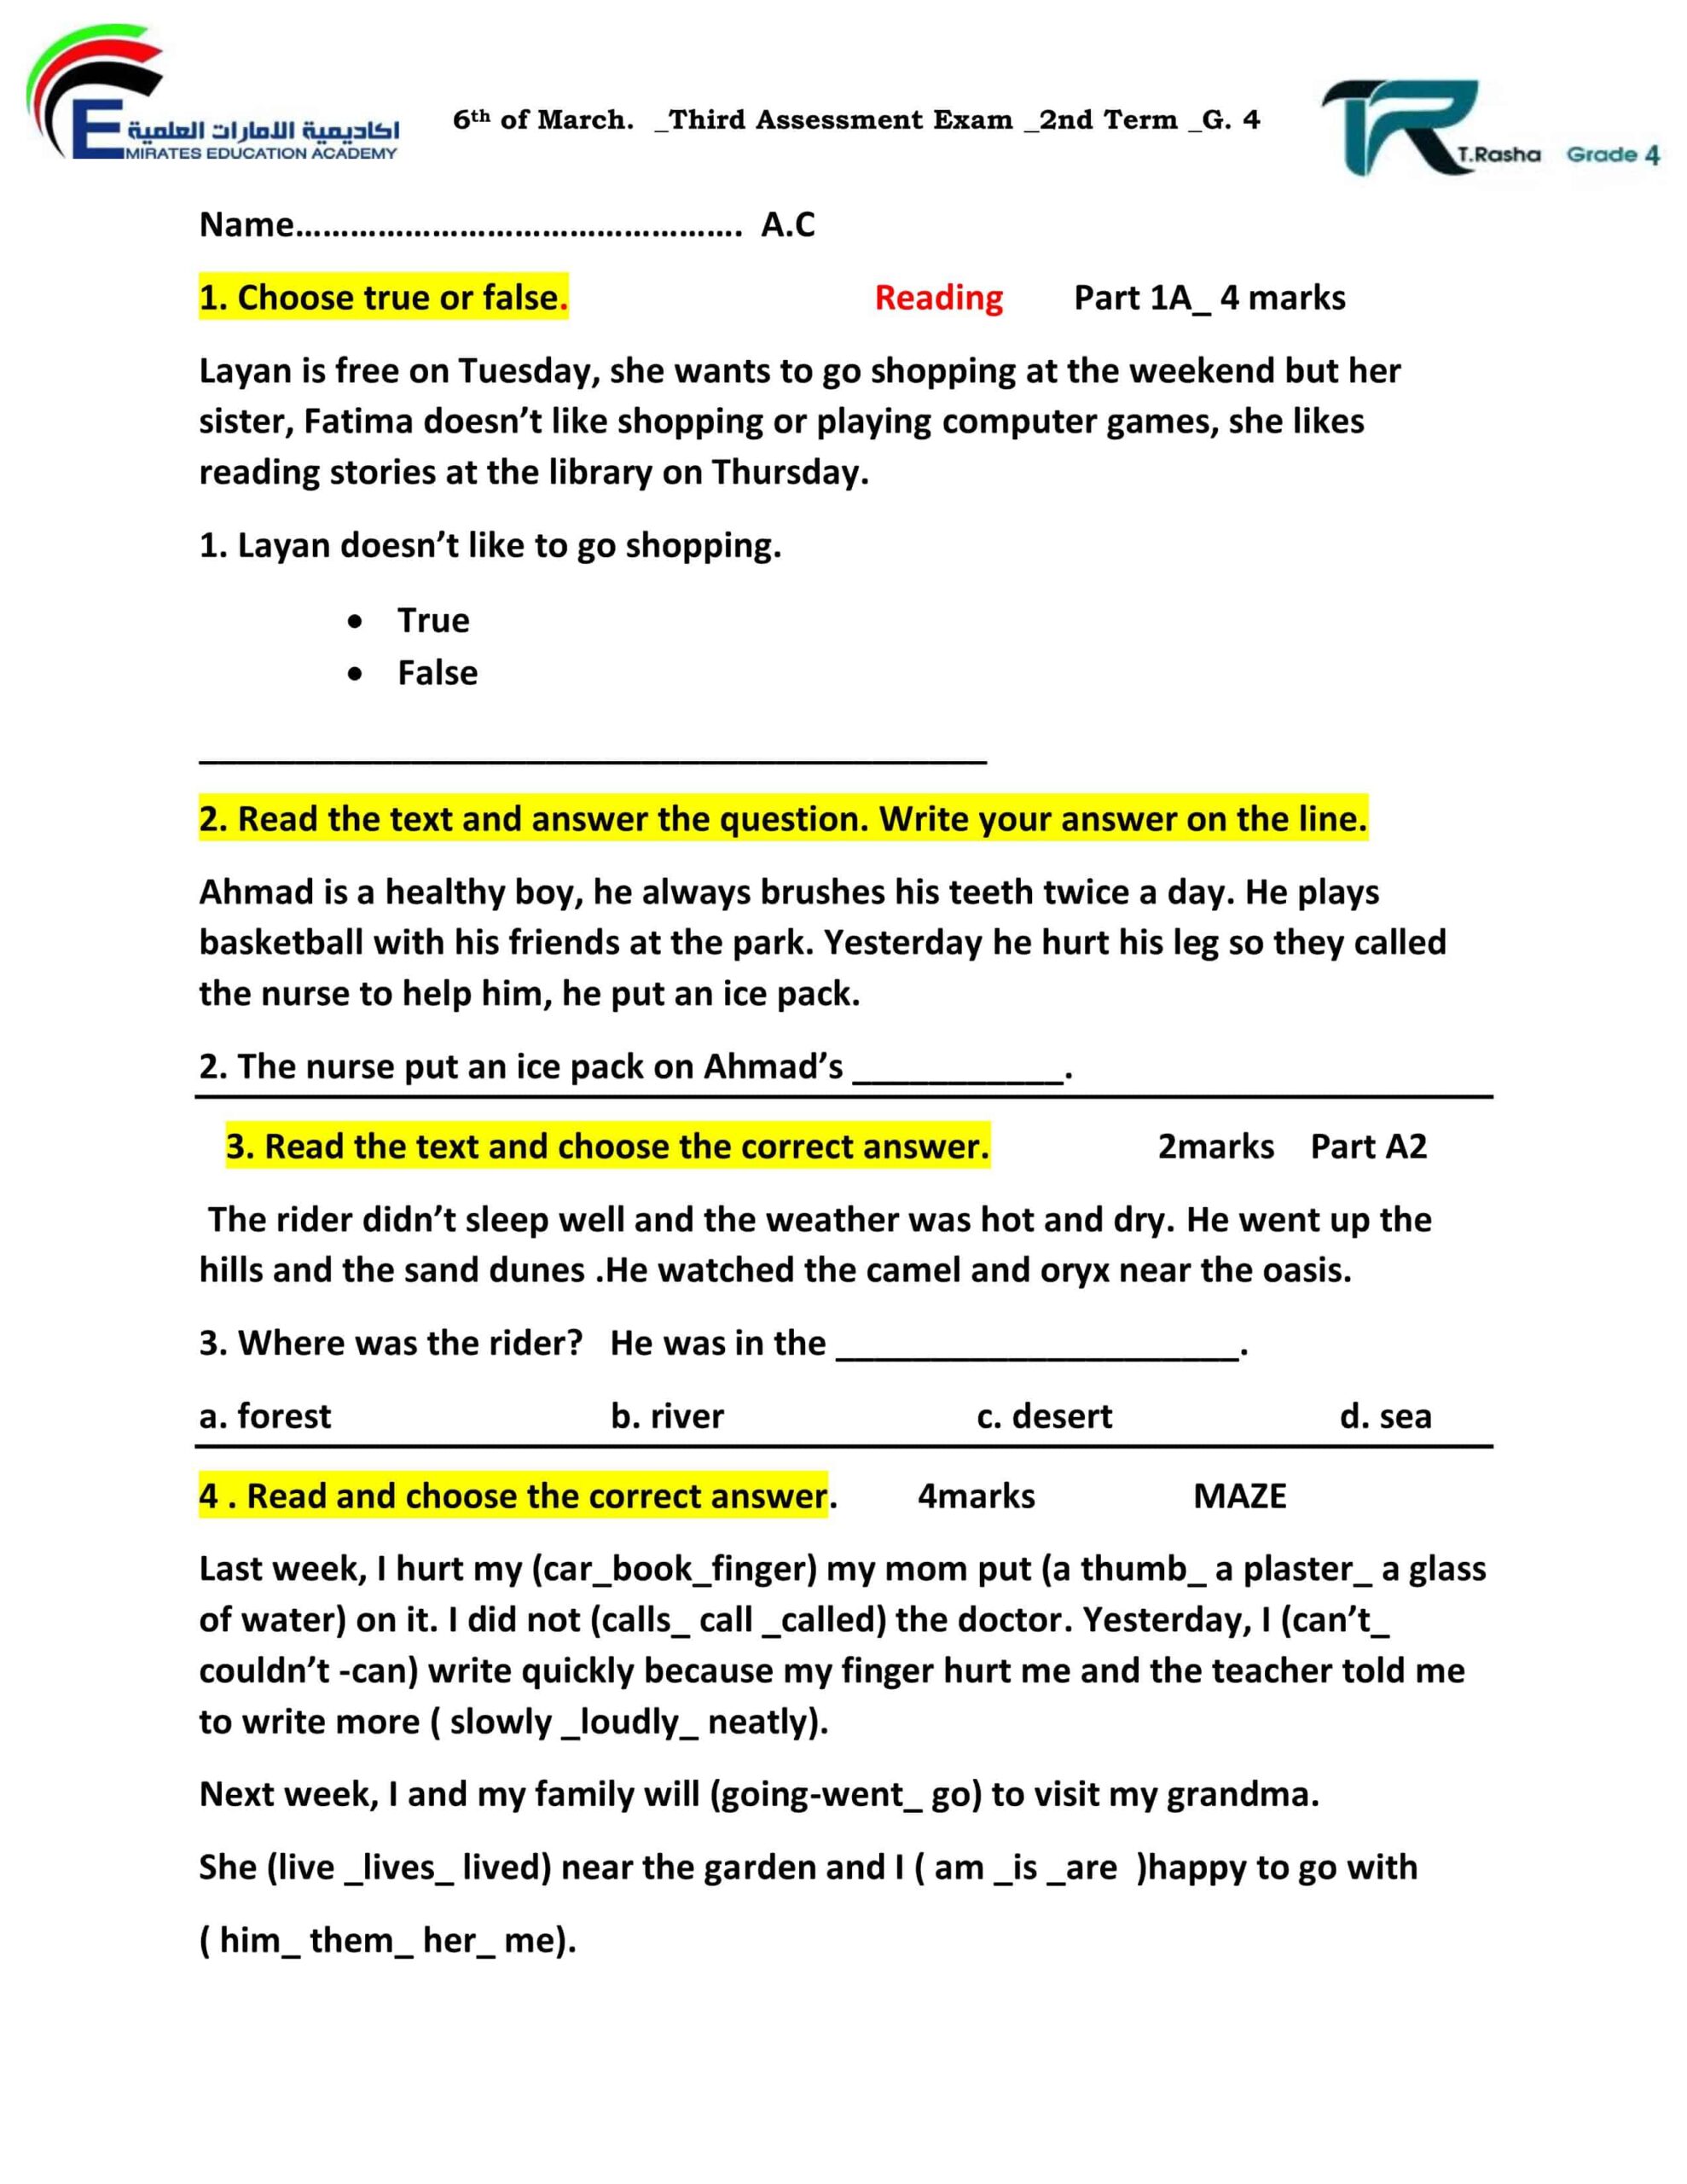 أوراق عمل Reading and Writing اللغة الإنجليزية الصف الرابع